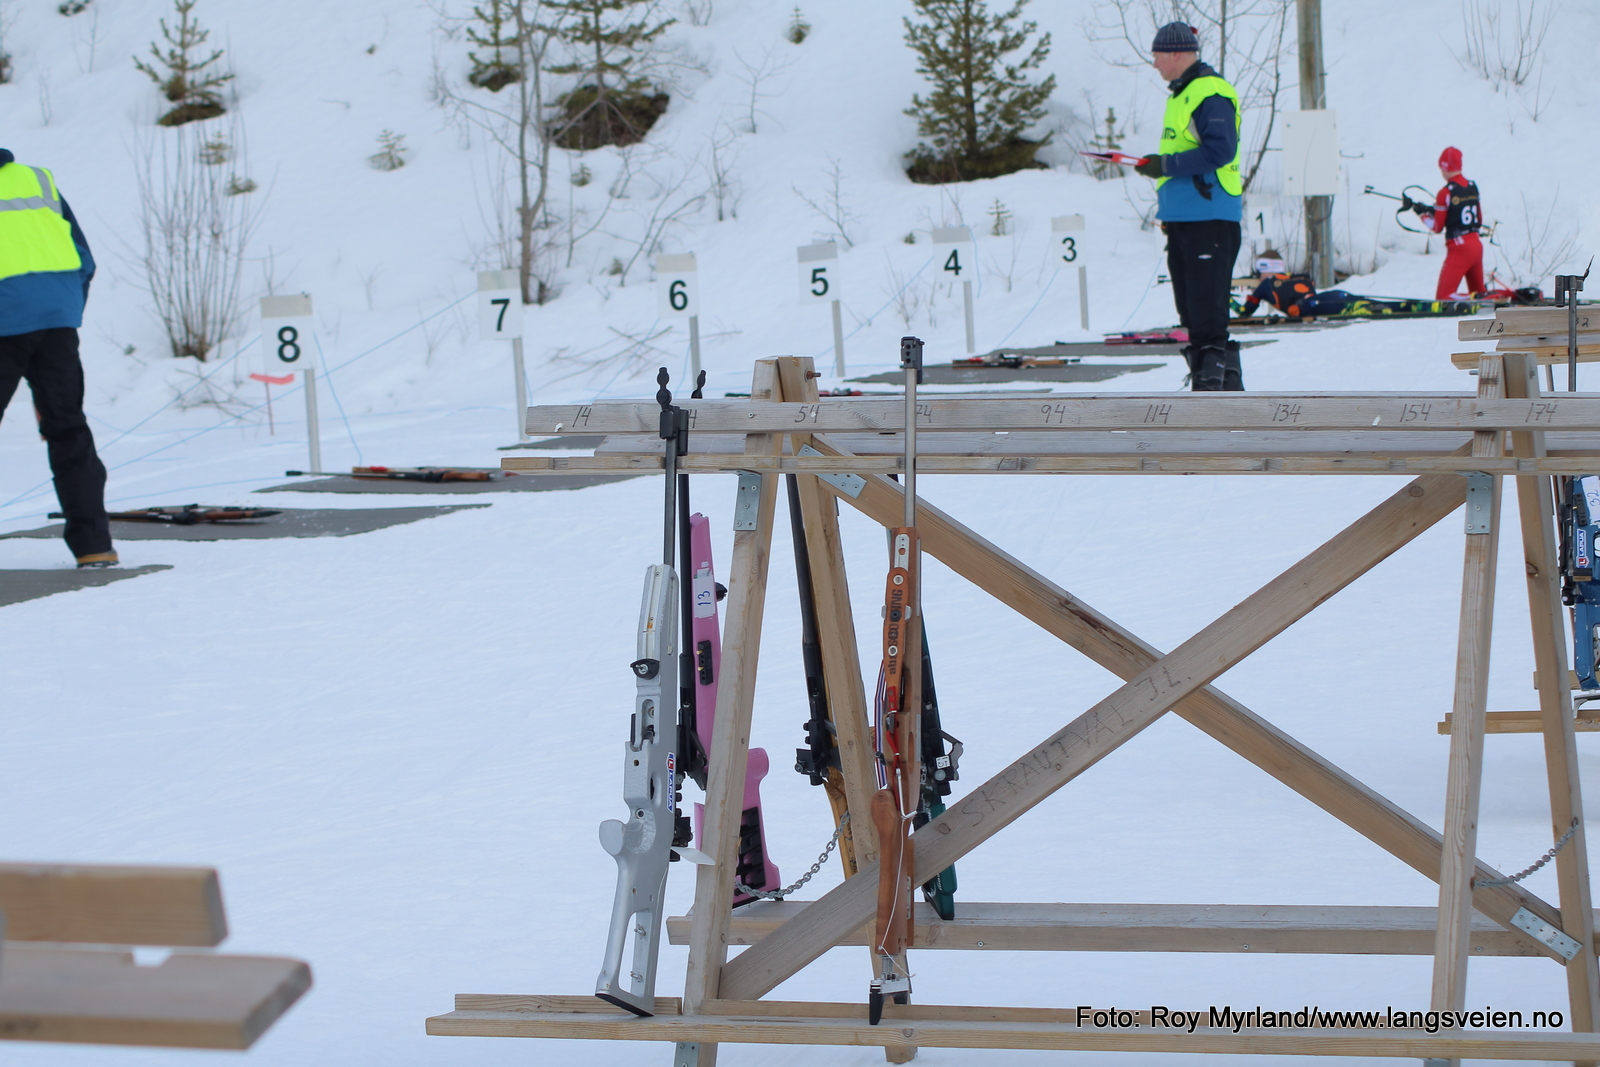 Skrautvålsprinten i skiskyting 2019 foto roy myrland langveien.no